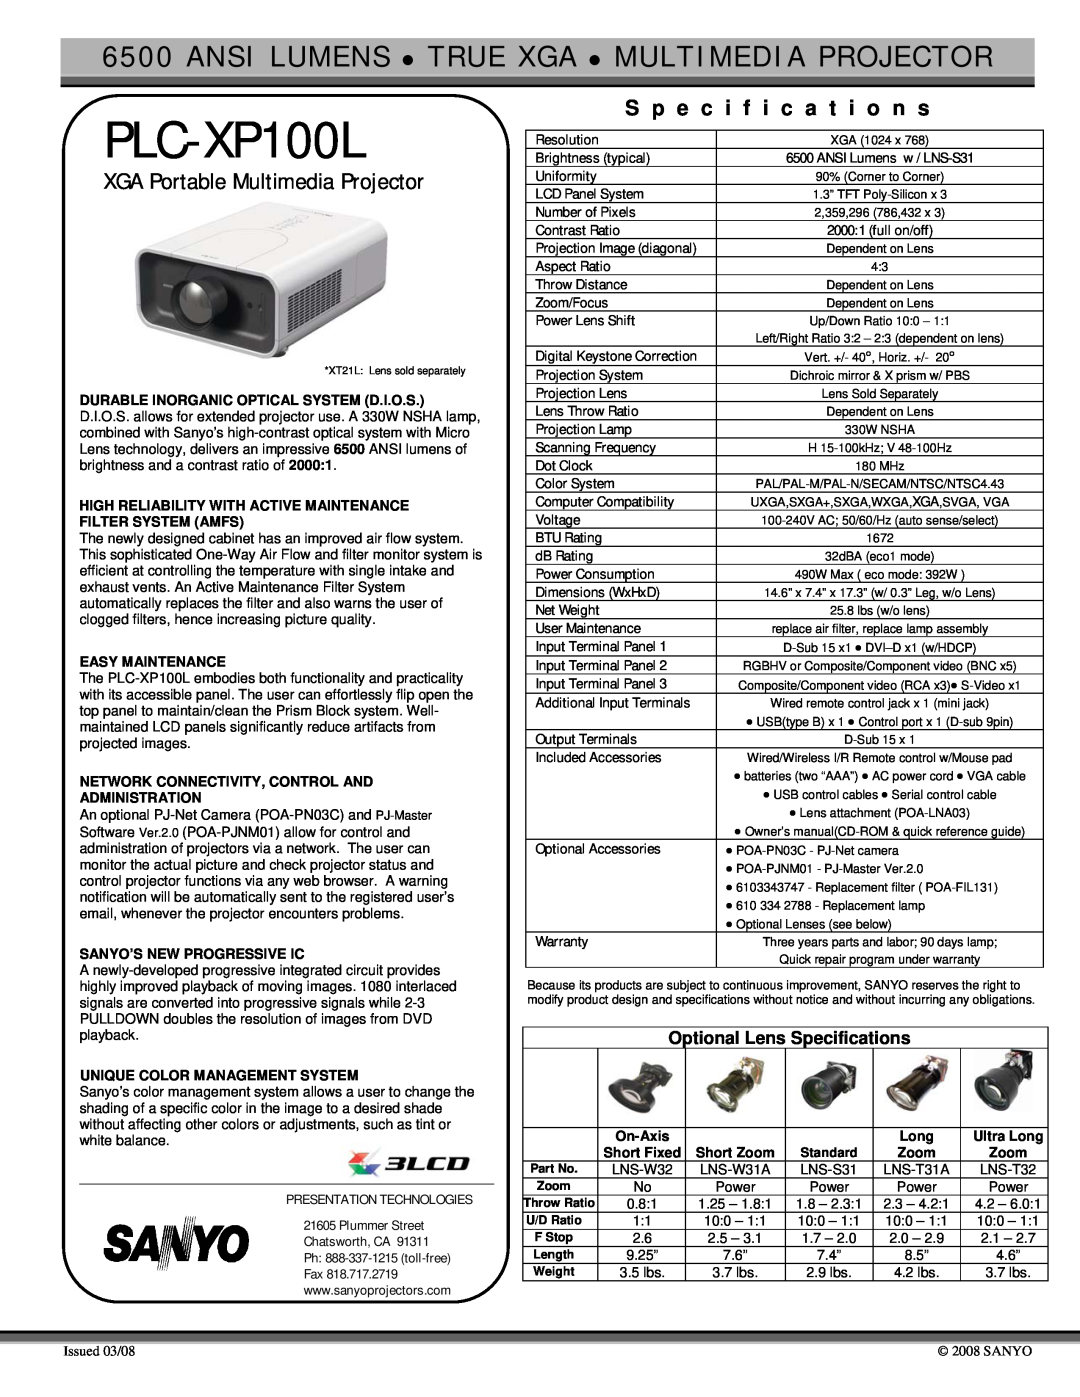 Sanyo PLC-XP100L specifications S p e c i f i c a t i o n s, XGA Portable Multimedia Projector 